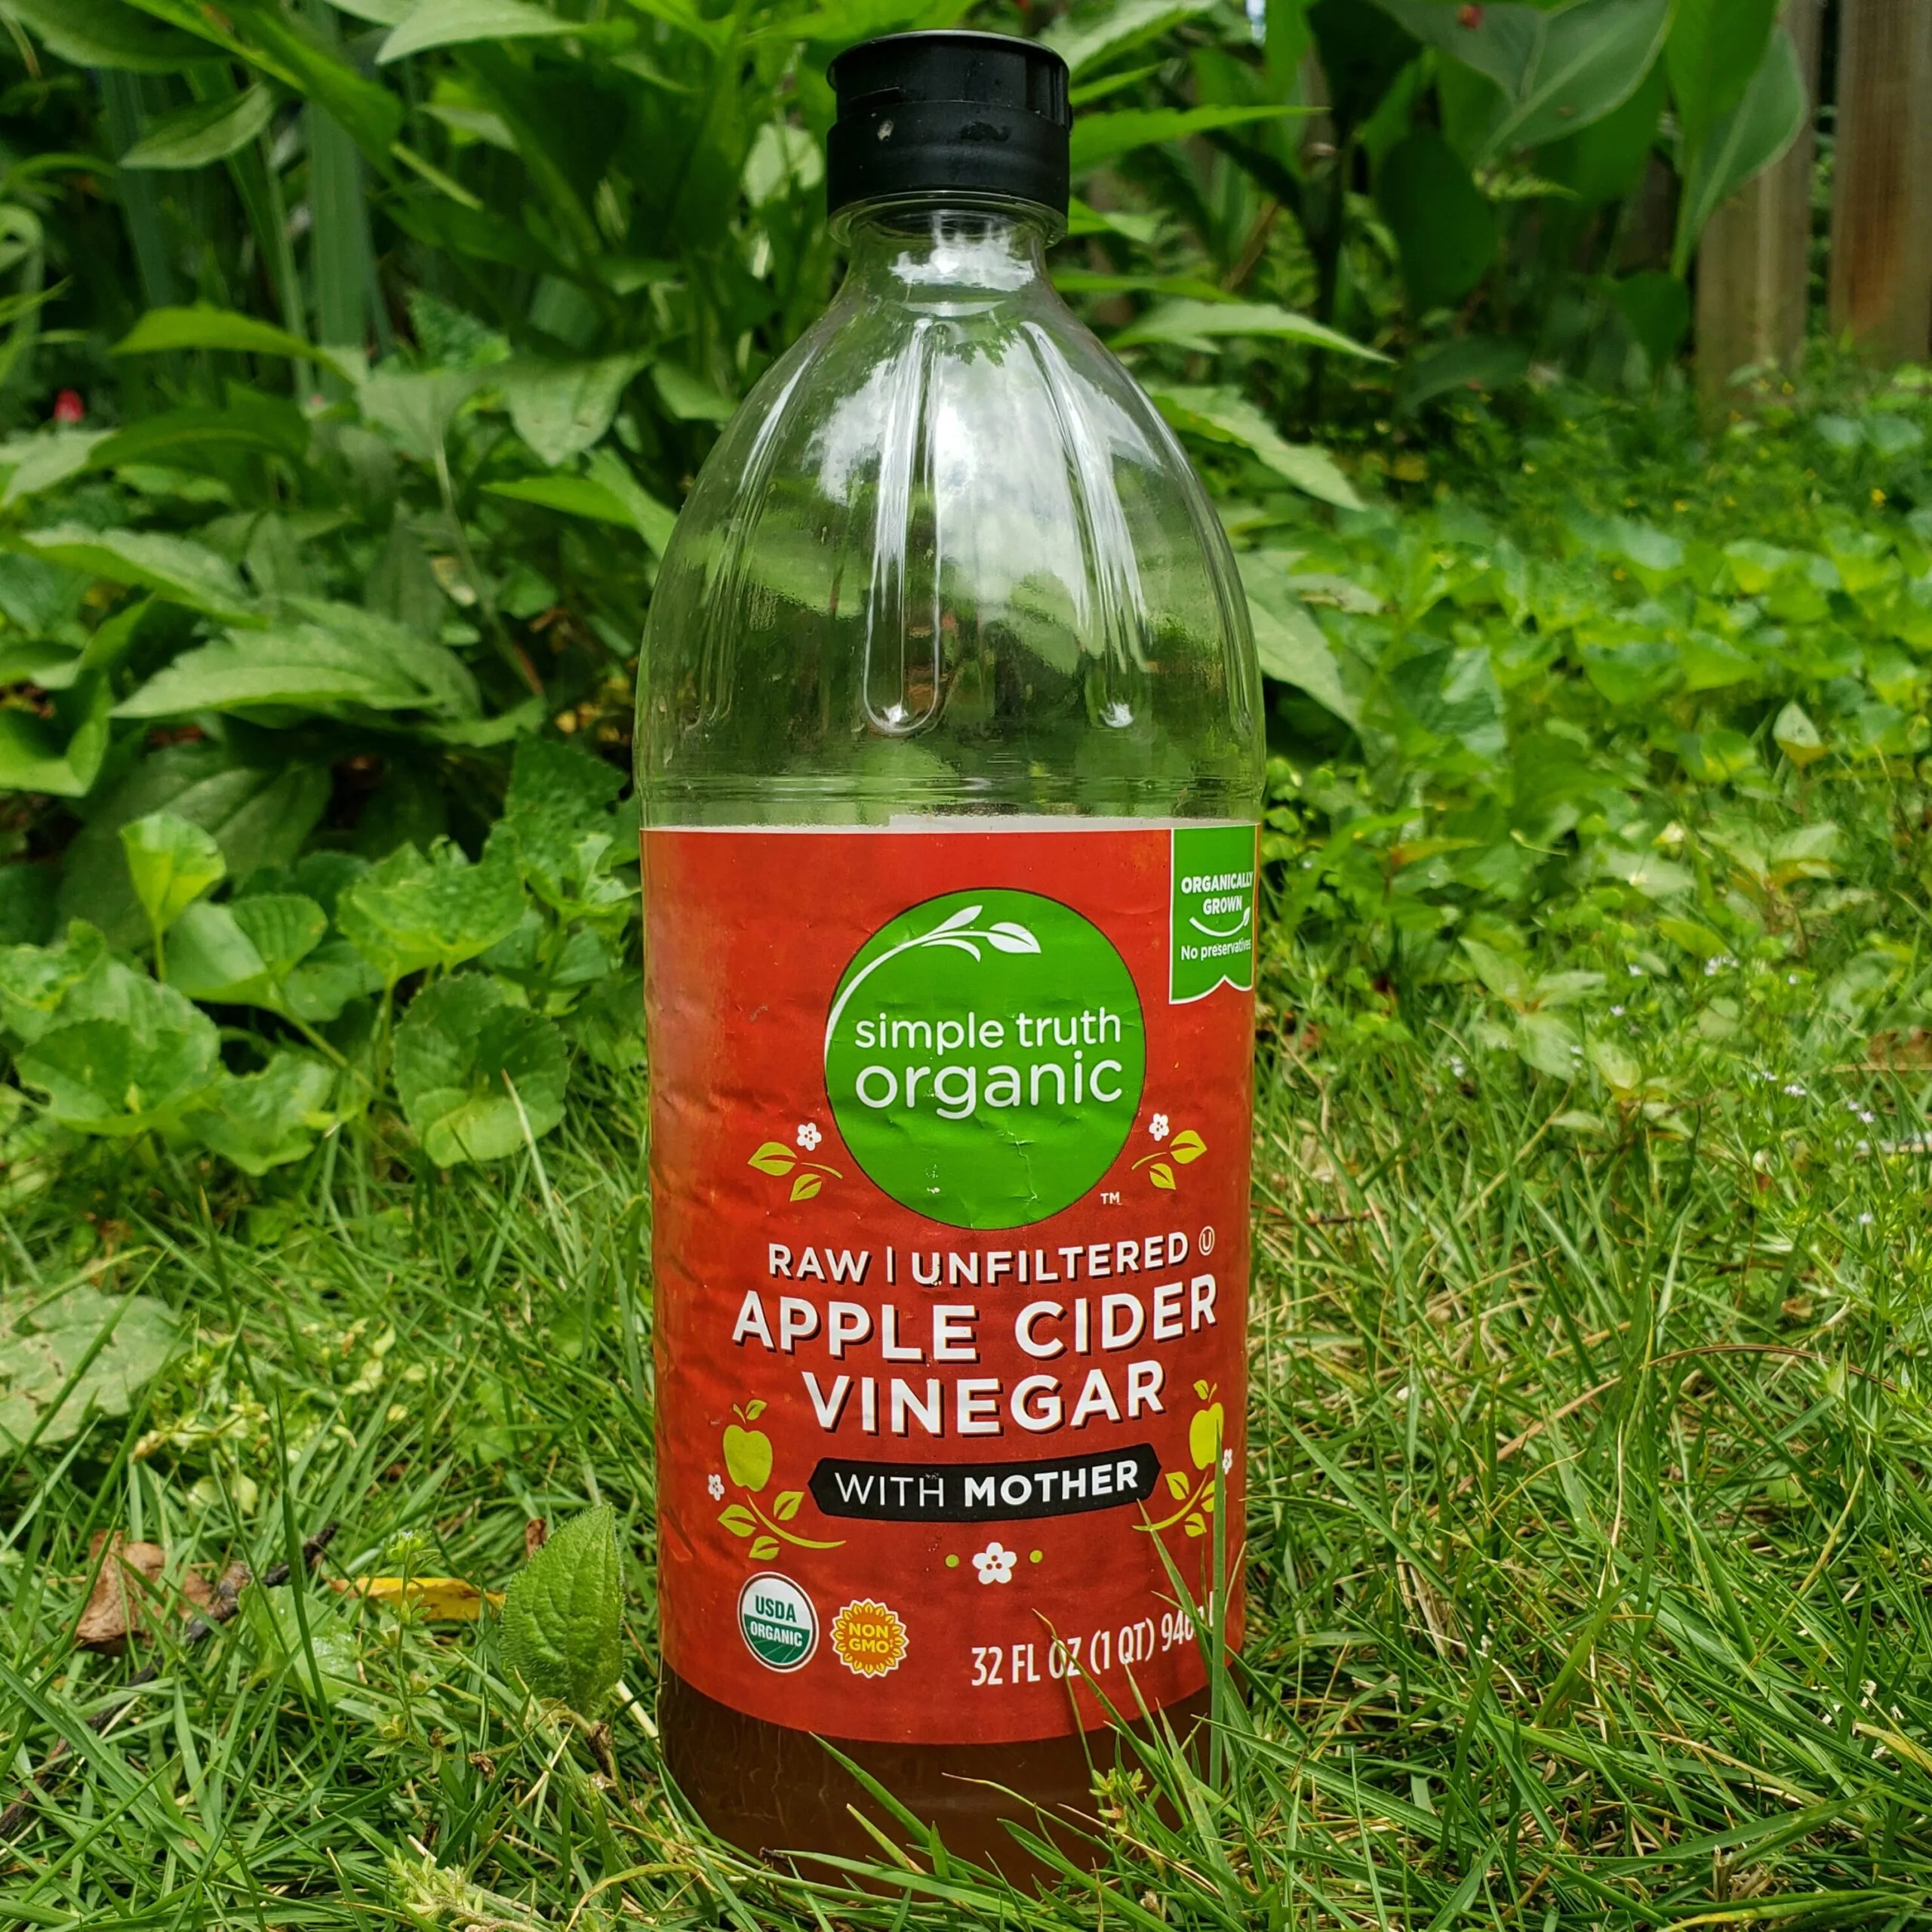 a bottle of apple cider vinegar against a garden backdrop